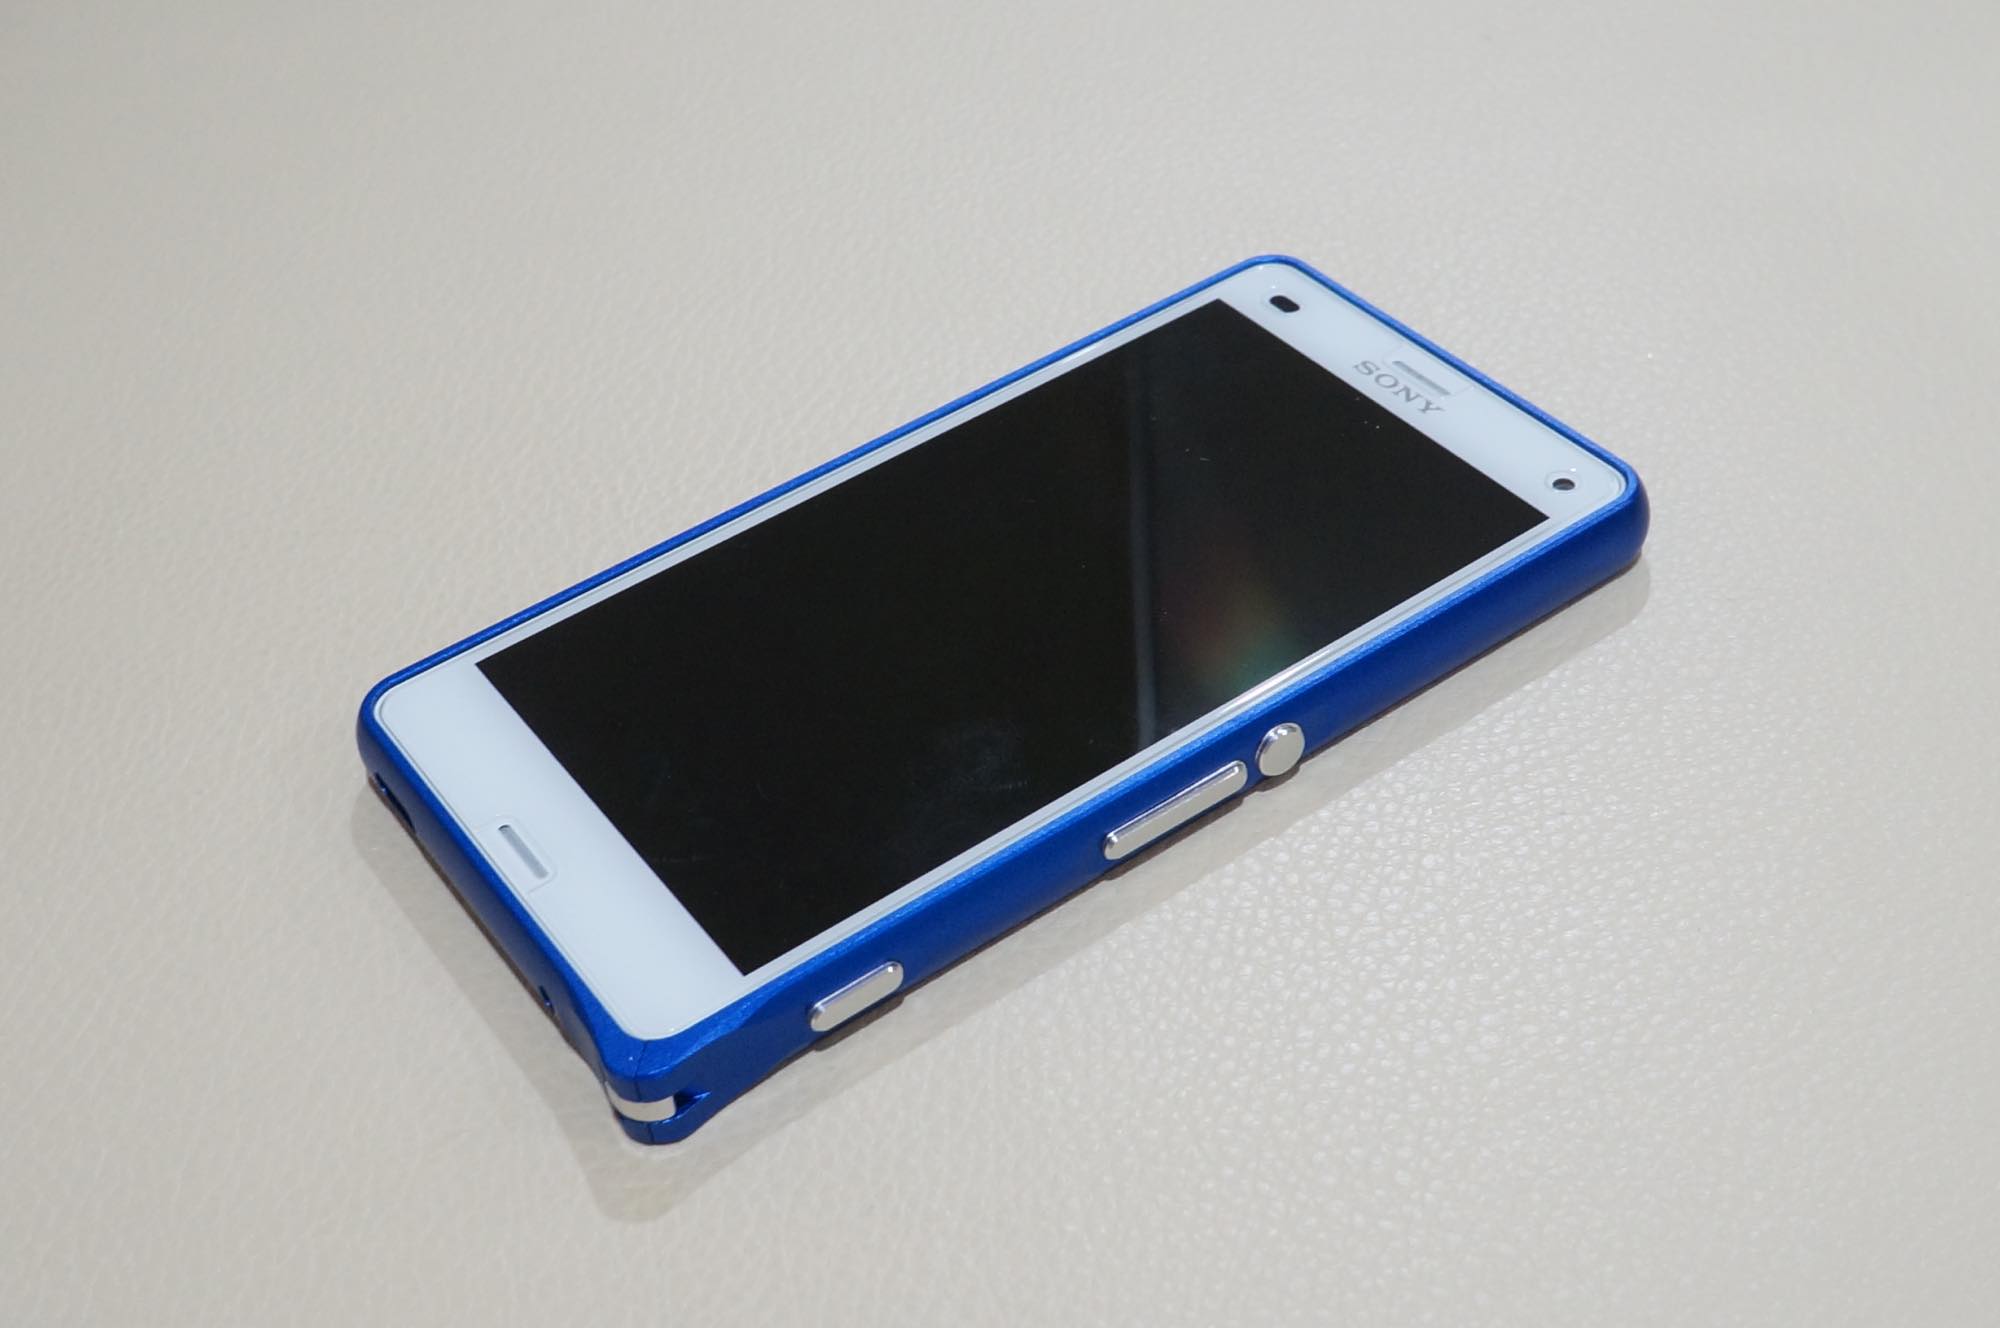 Xperia Z3 Compact に青いアルミバンパーを装着 ウォークマンケータイを彷彿とさせるデザインに